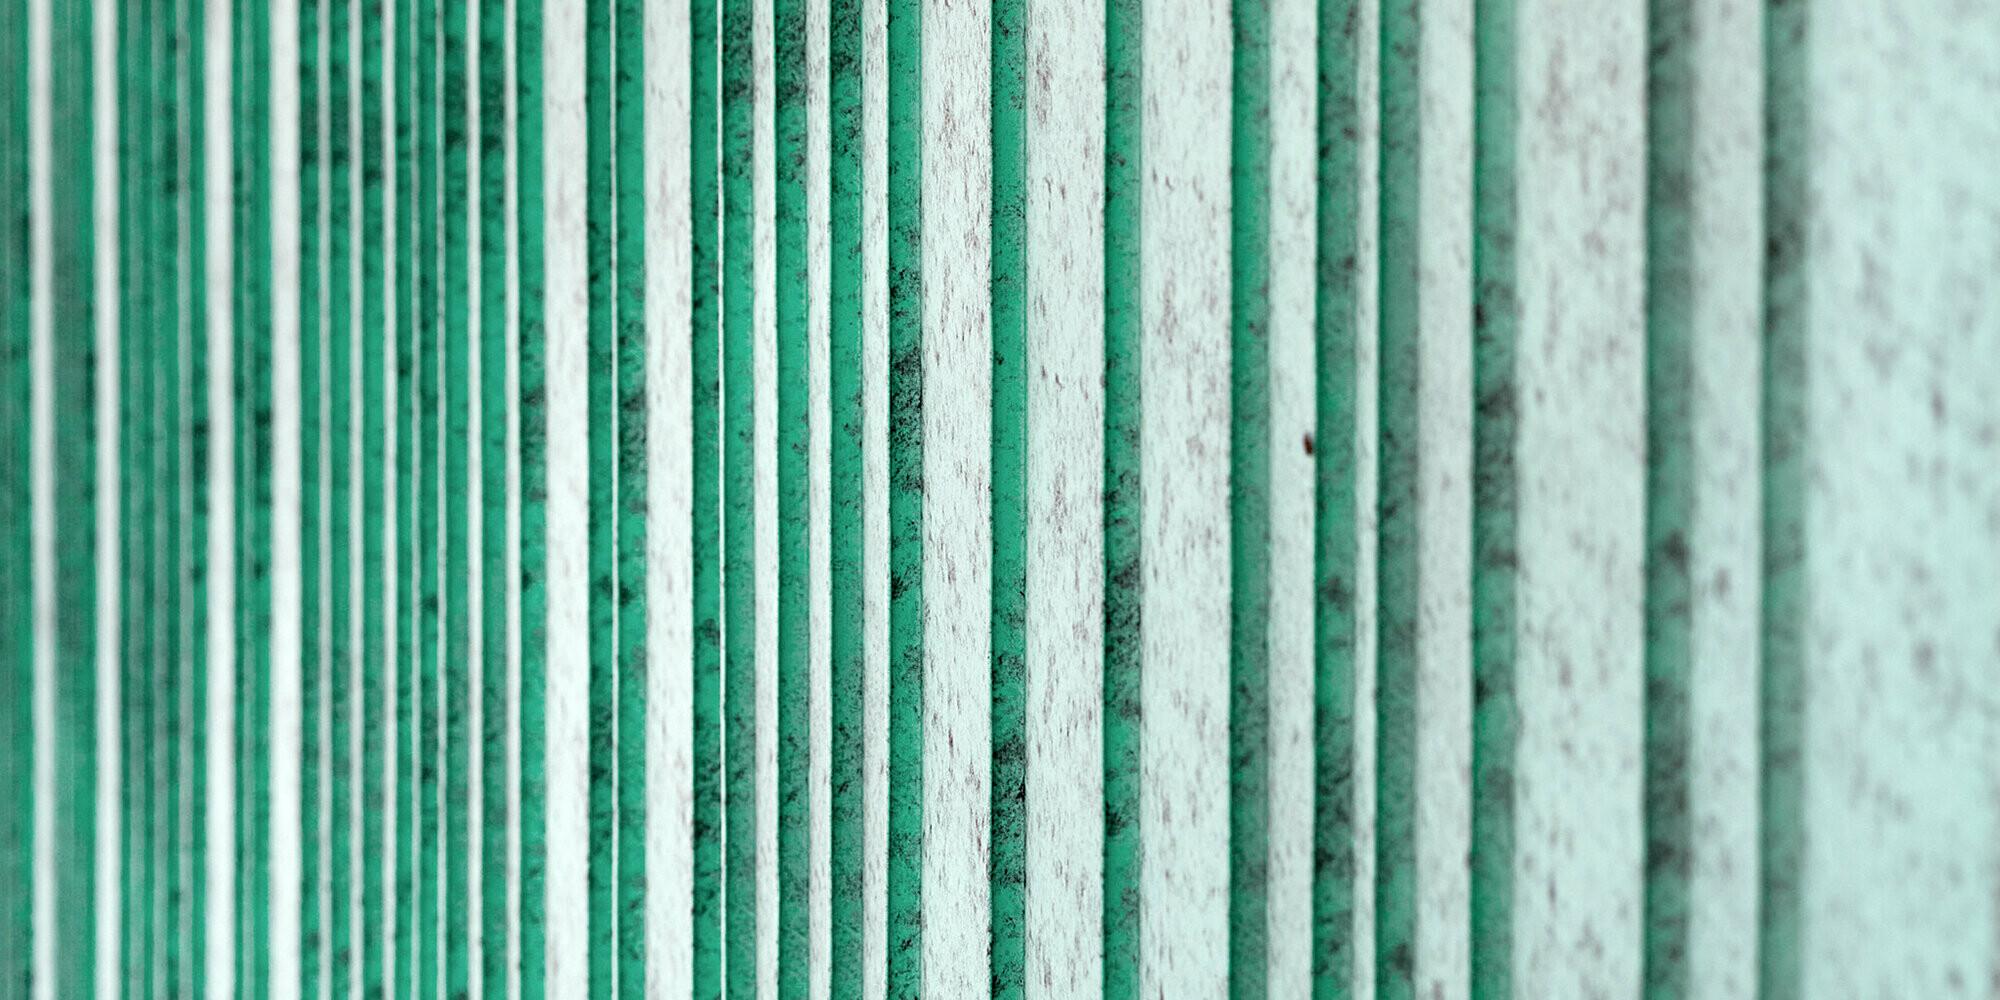 Detailní pohled na hliníkovou fasádu PREFALZ v barvě P.10 patině zelené. Fasáda je rytmizována šáry různých šířek. Barva vytváří melírovaný vzhled.